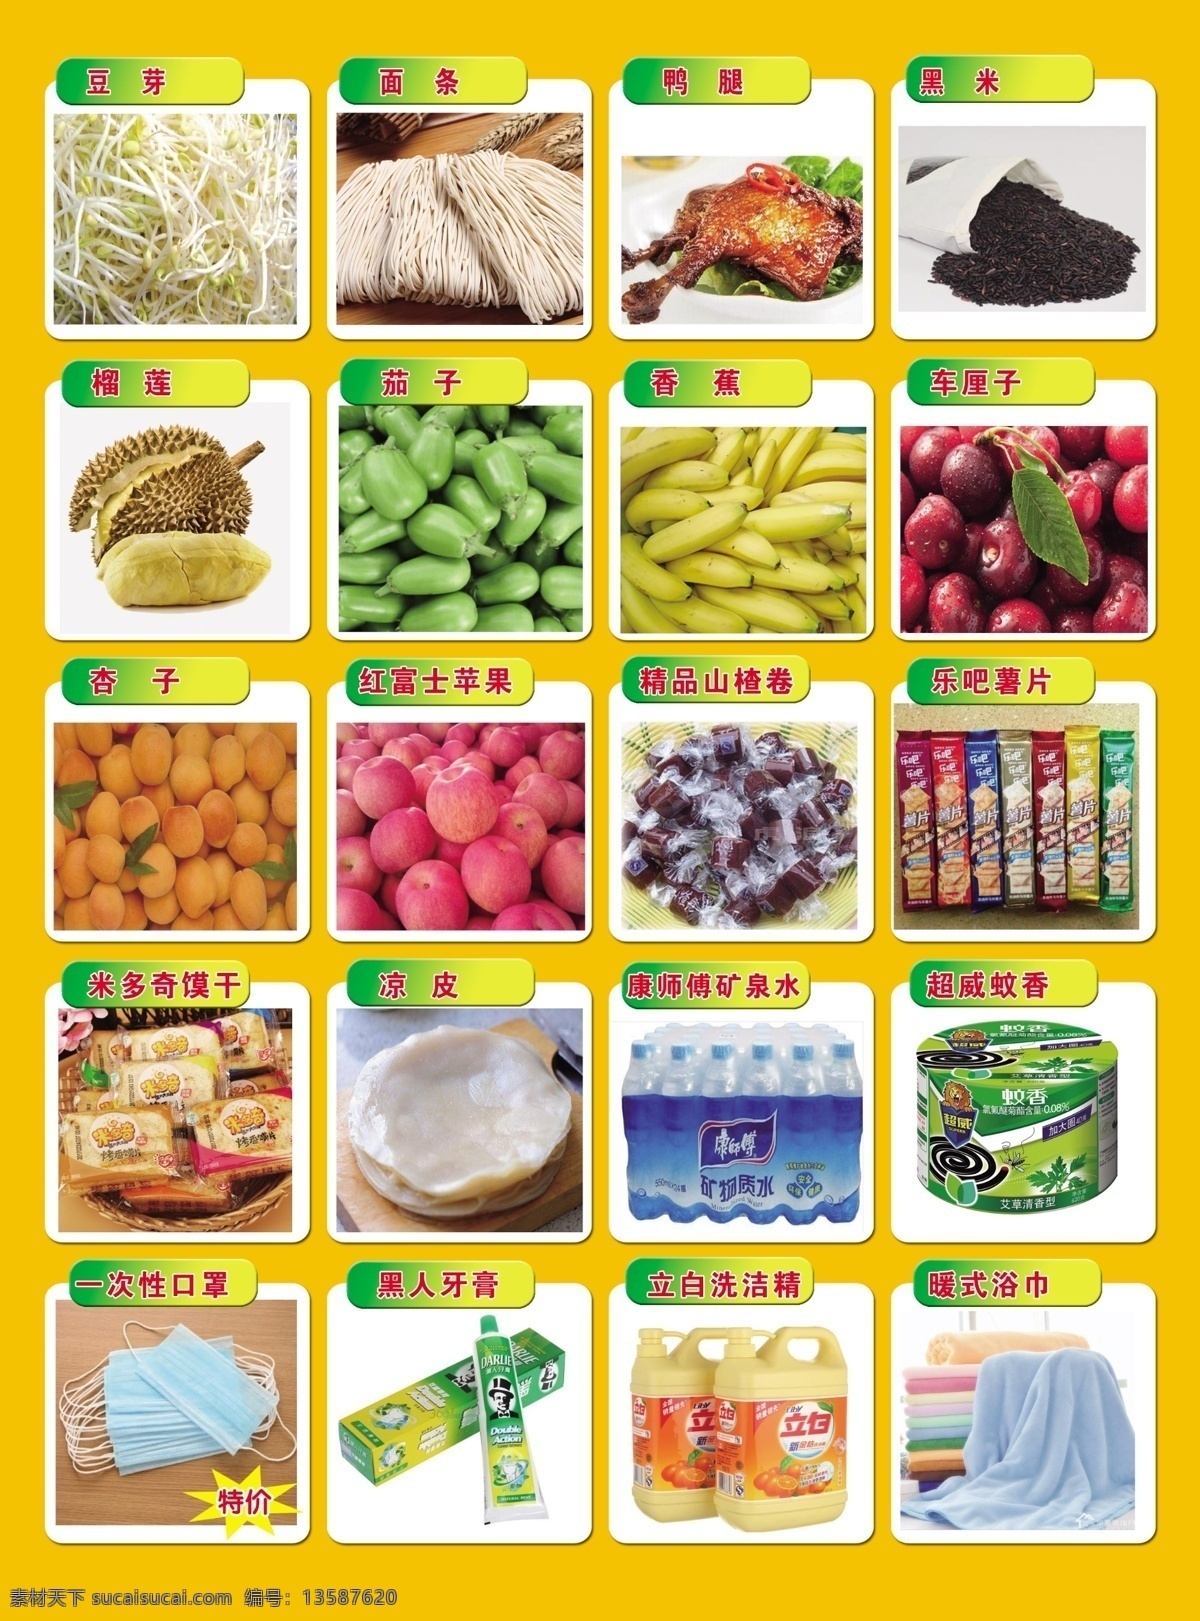 超市活动单页 超市 活动 单页 开业 生鲜蔬菜 分层